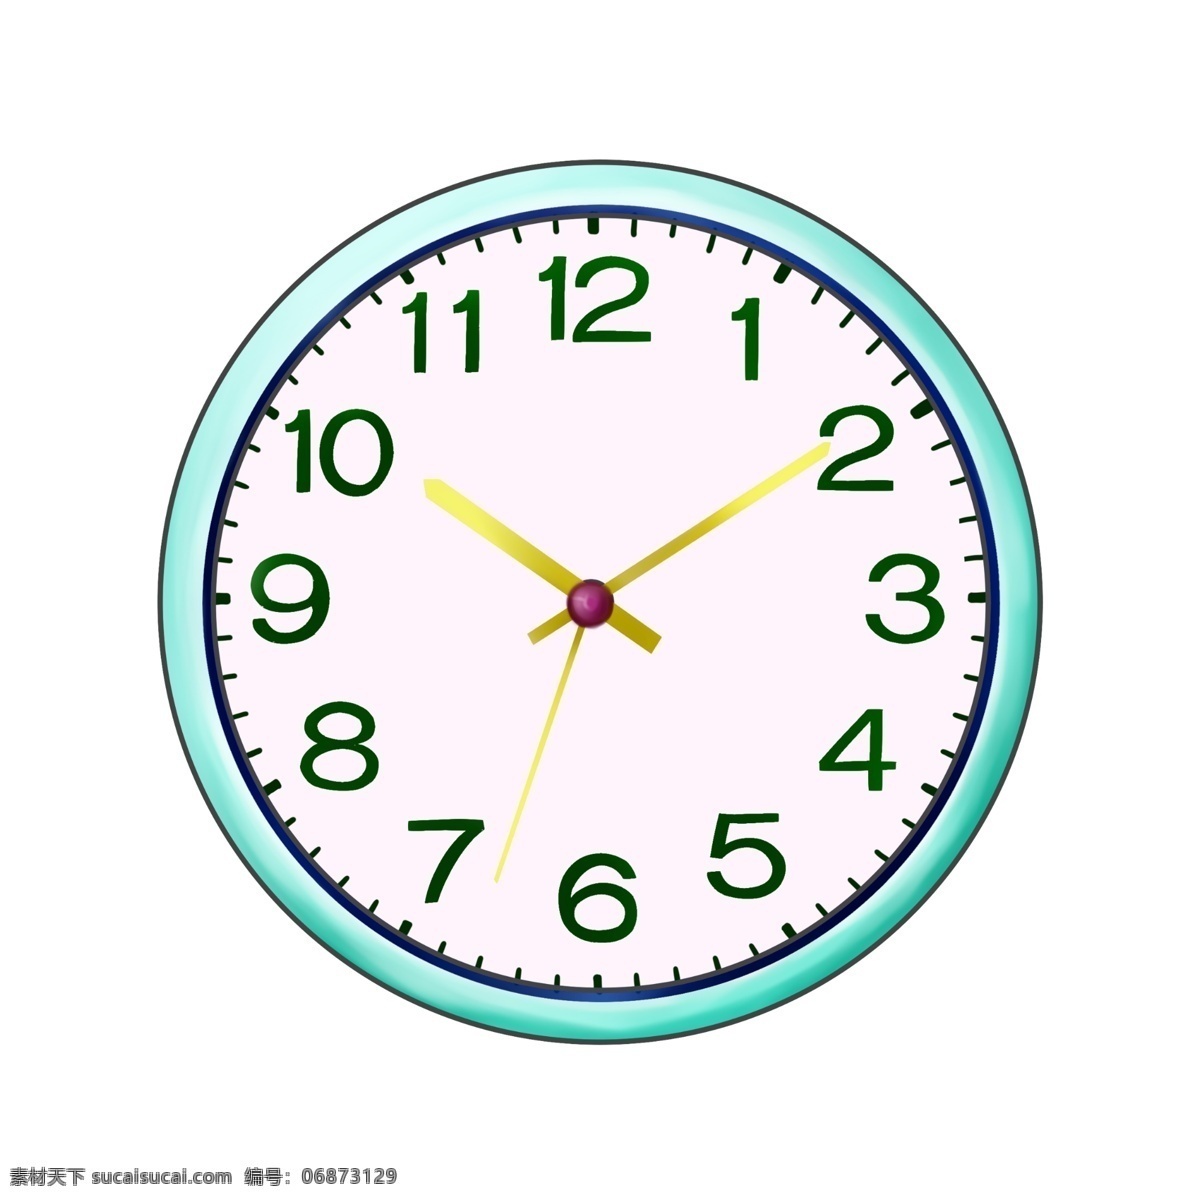 蓝色 时间 钟表 插图 闹钟 表 钟表插画 钟表插图 蓝色时钟 时间钟表插图 黄色指针 数字